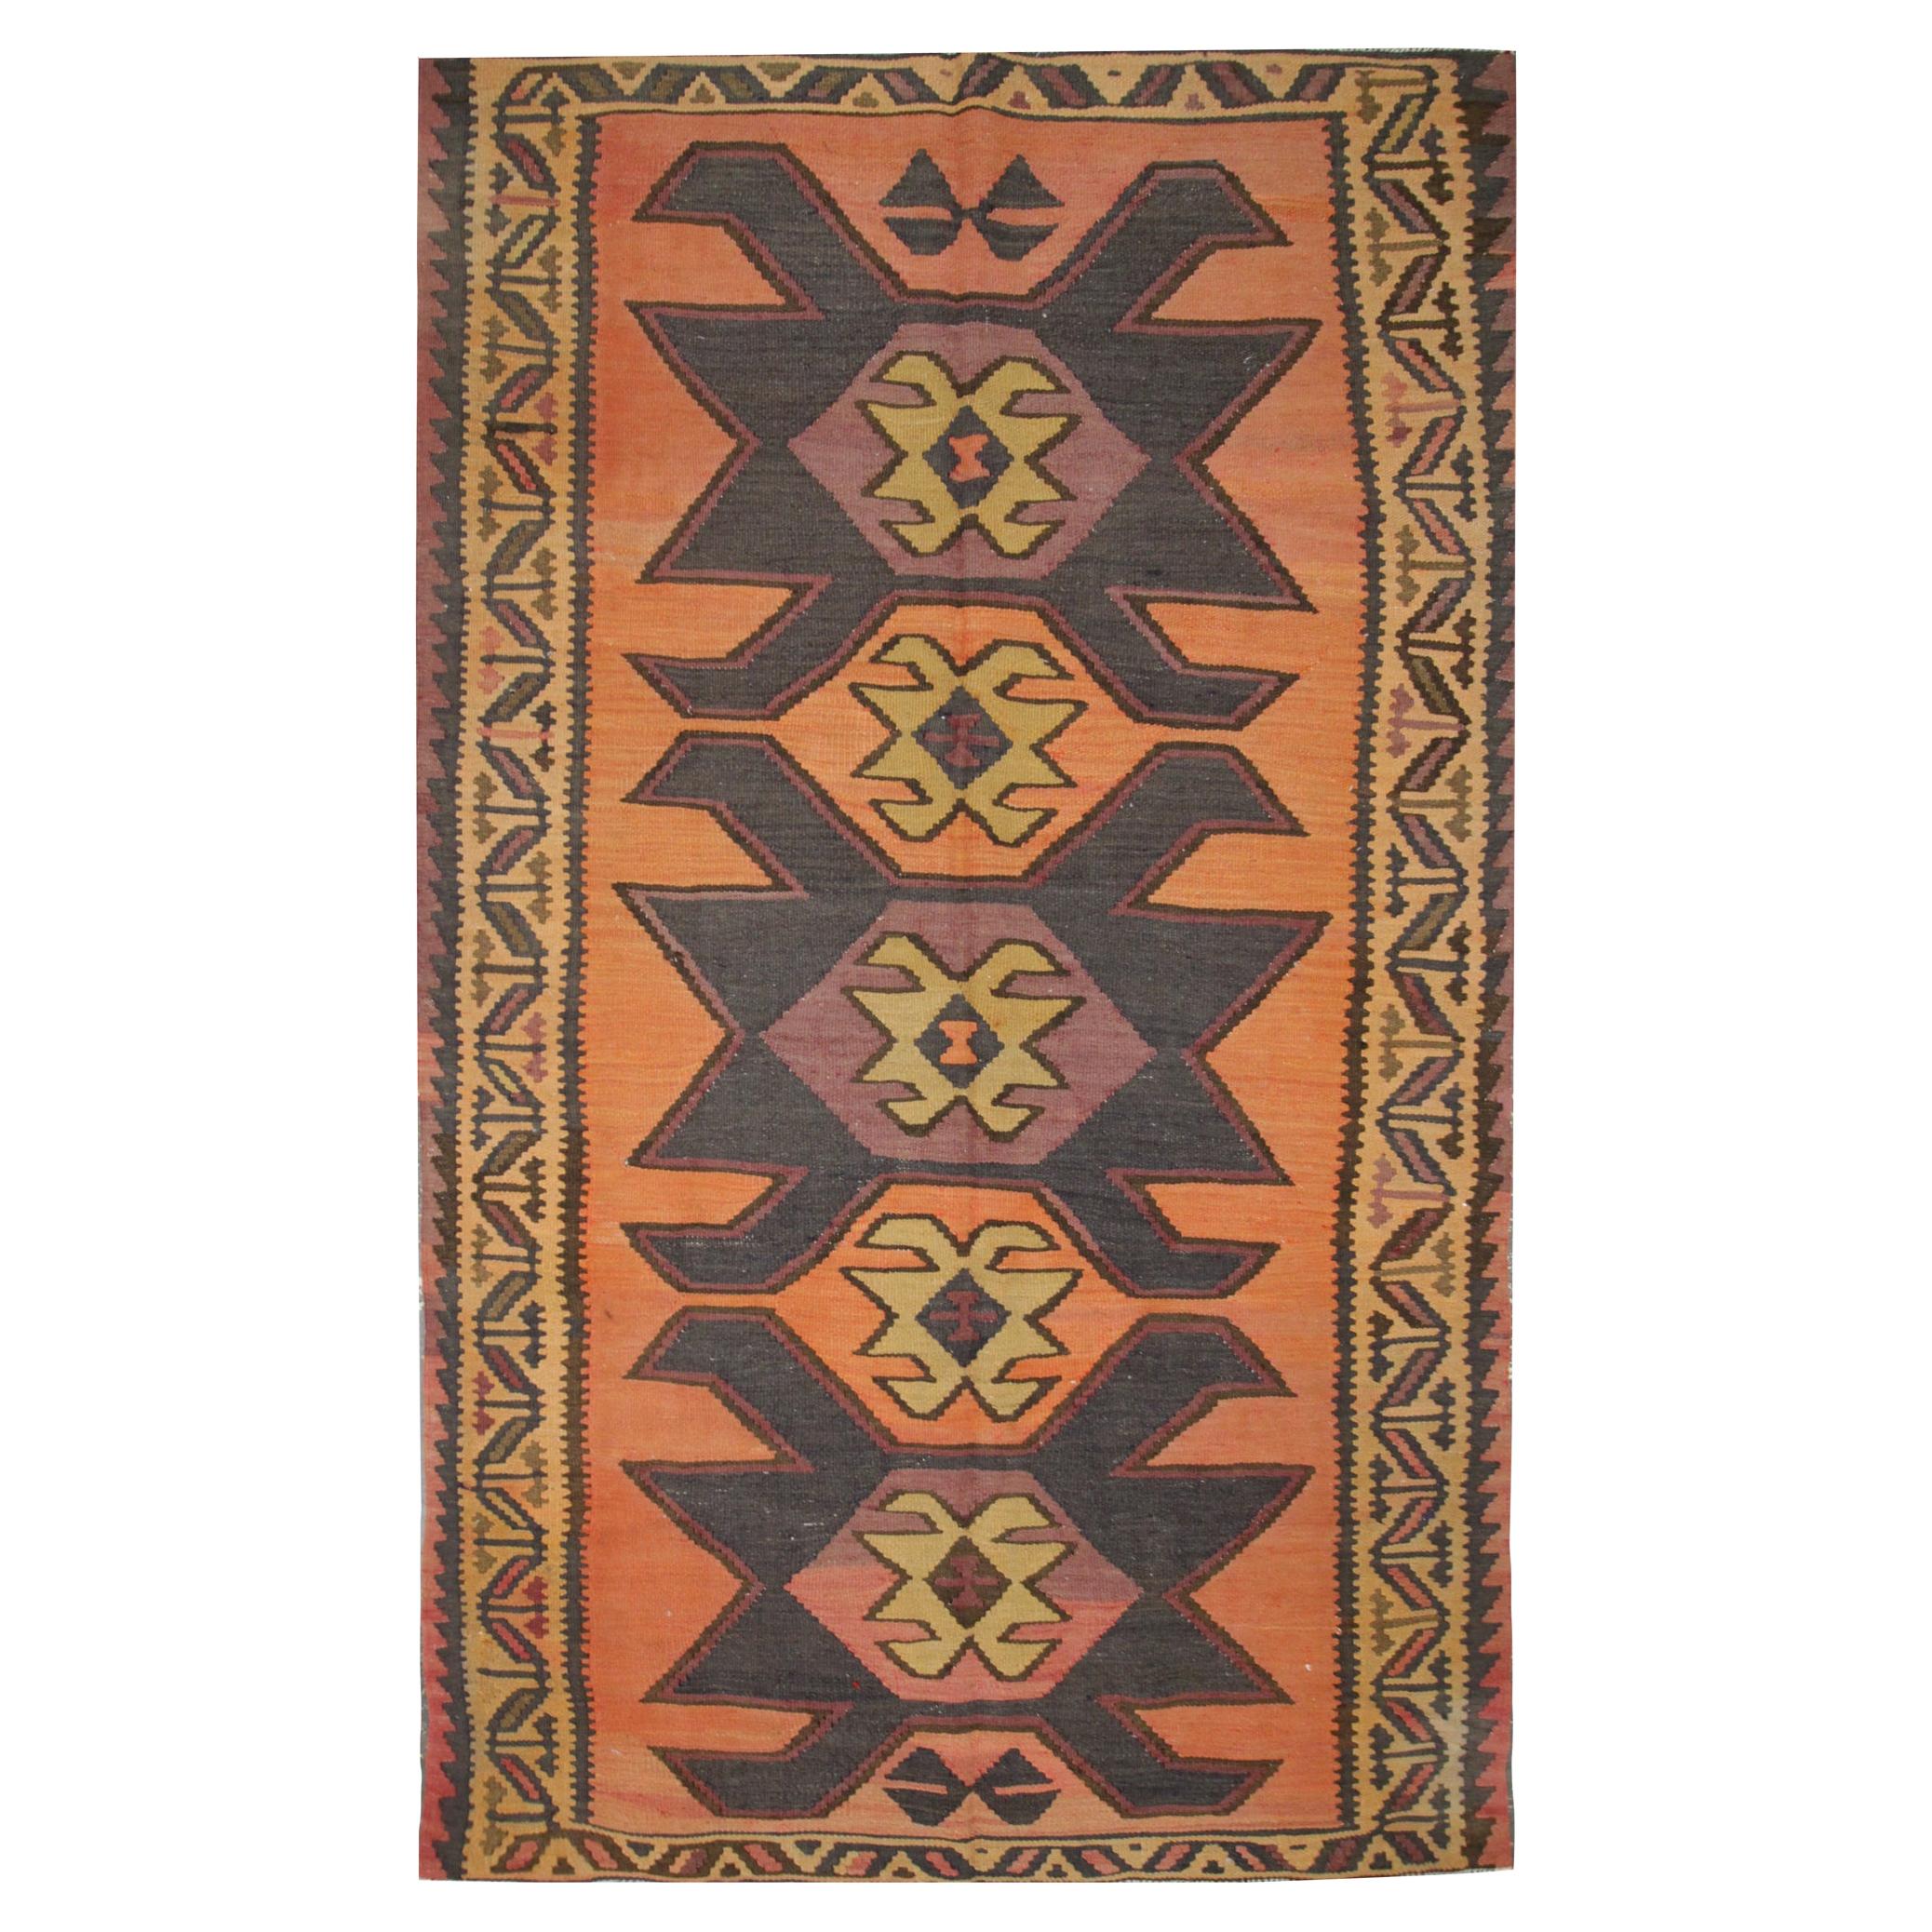 Vintage Geometric Kilim Rug Handwoven Tribal Orange Wool Area Rug